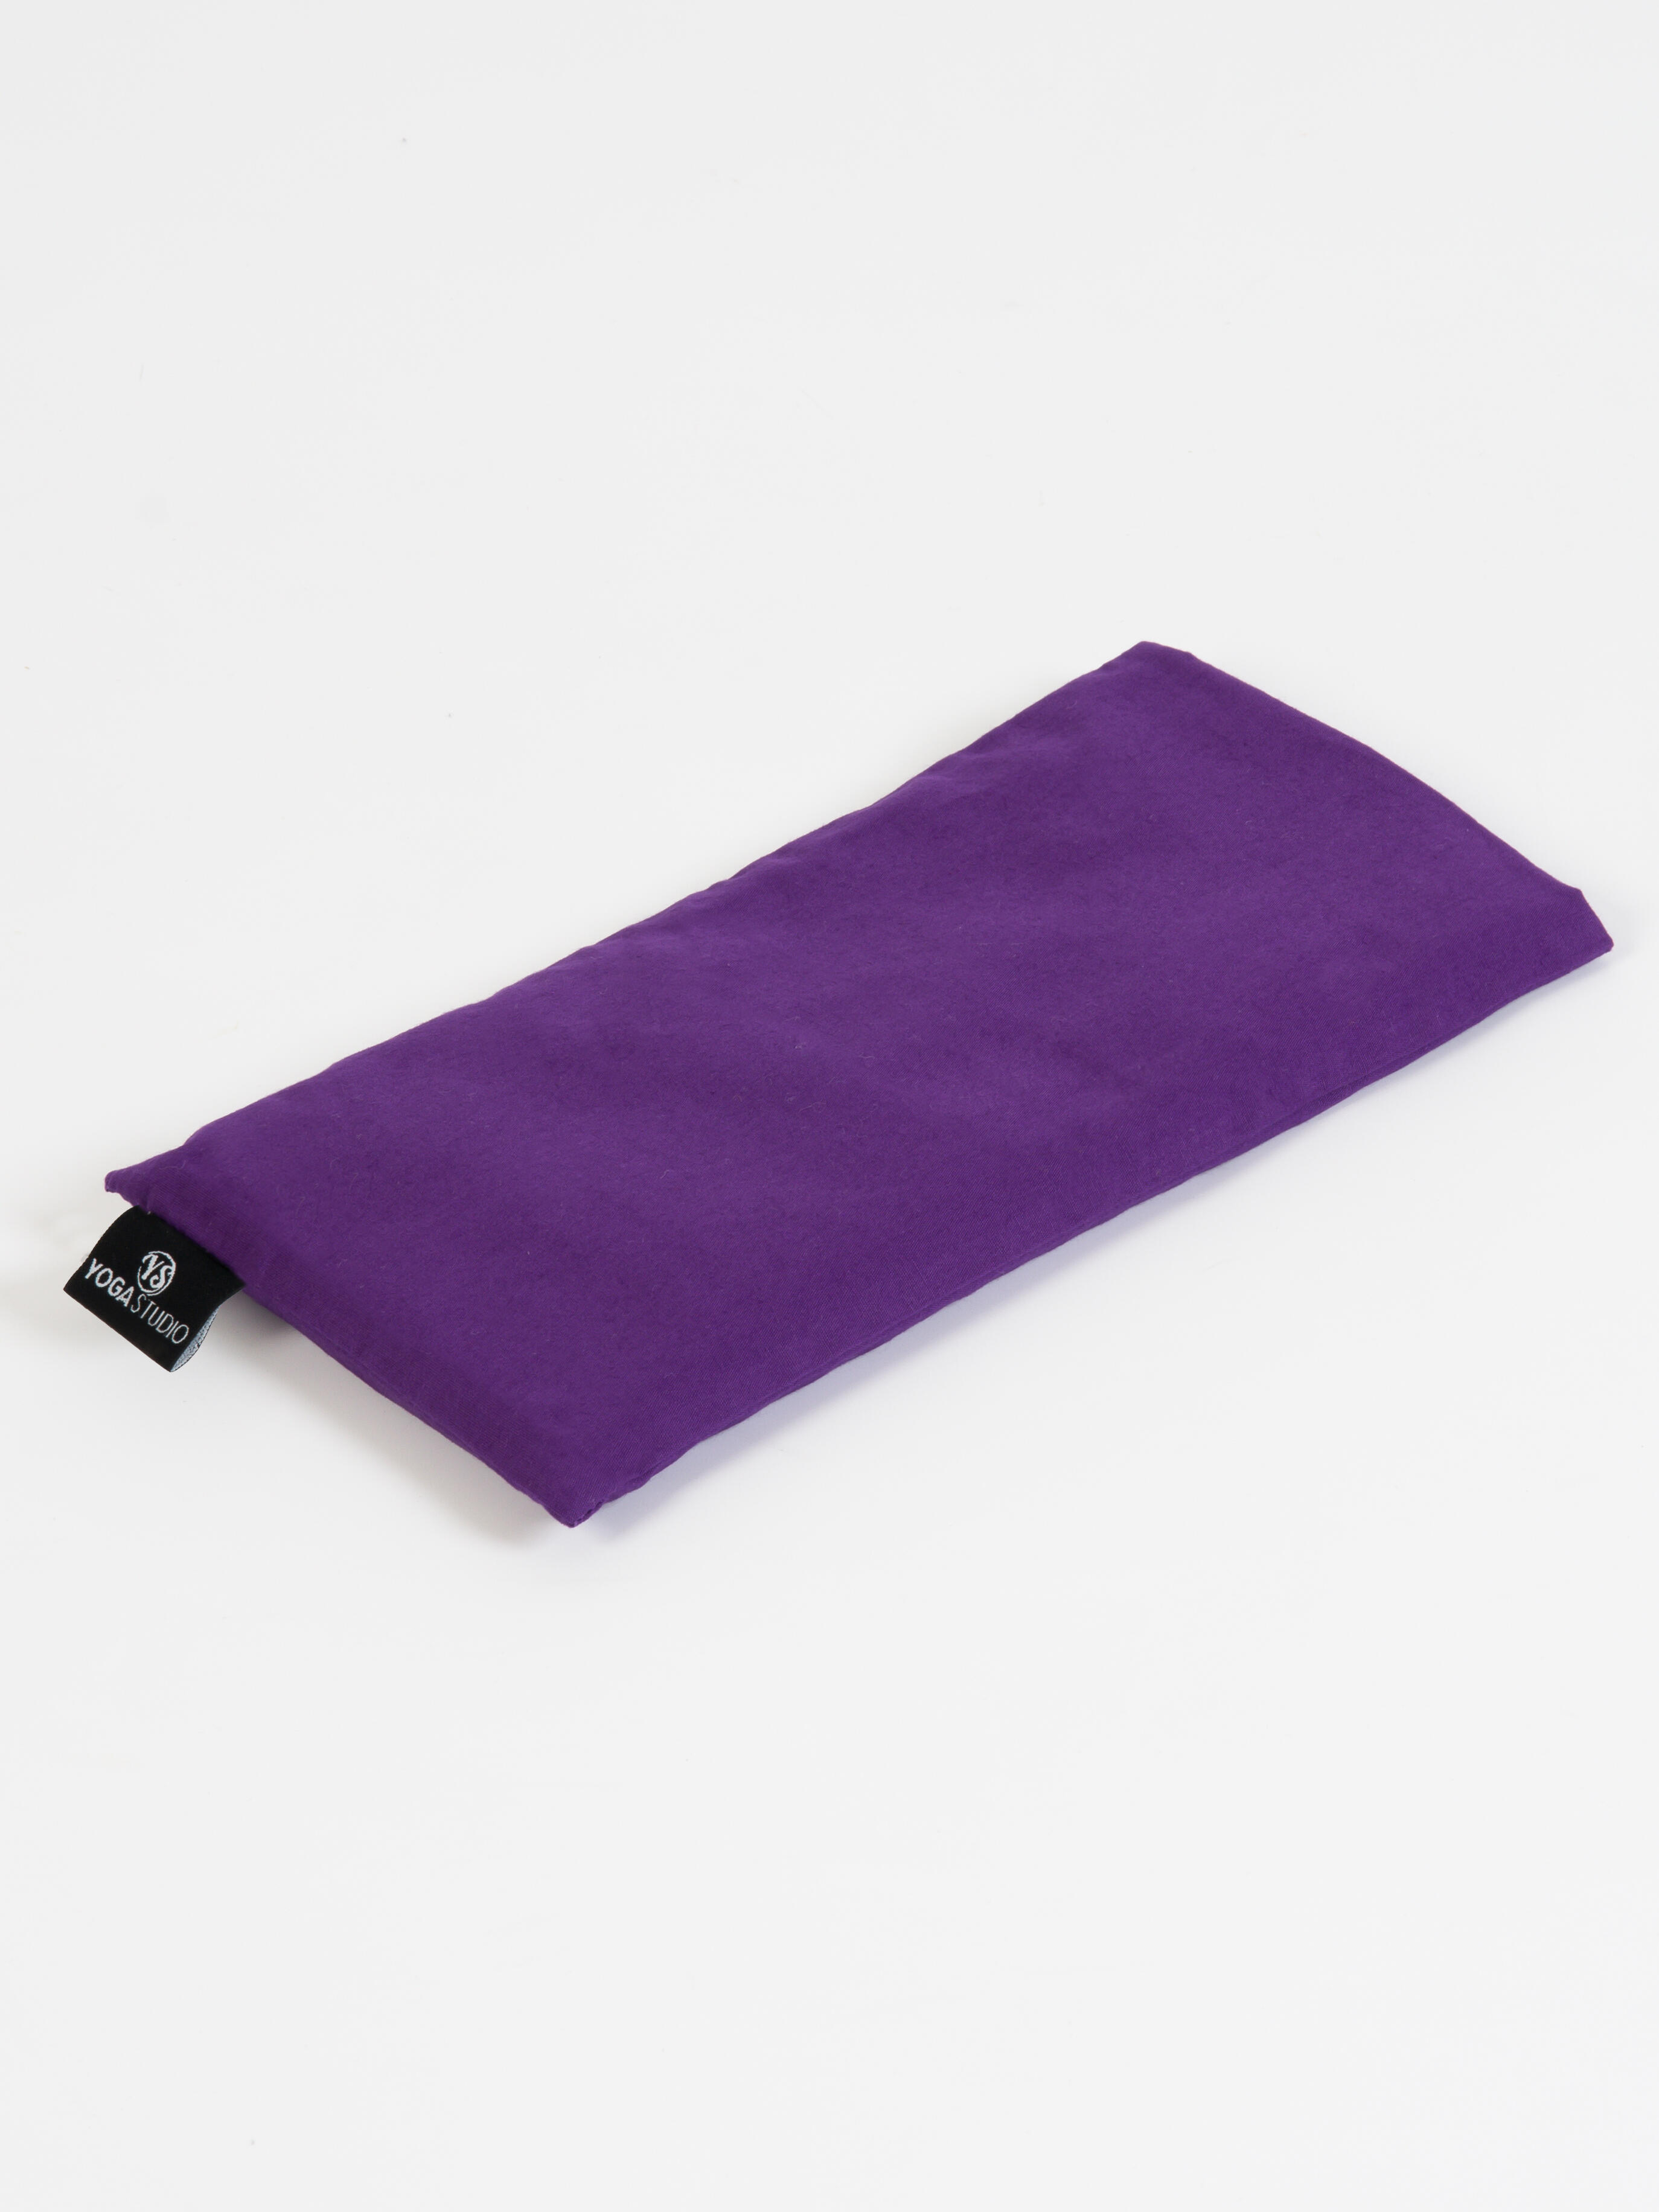 YOGA STUDIO Yoga Studio Linseed Eye Pillow - Purple